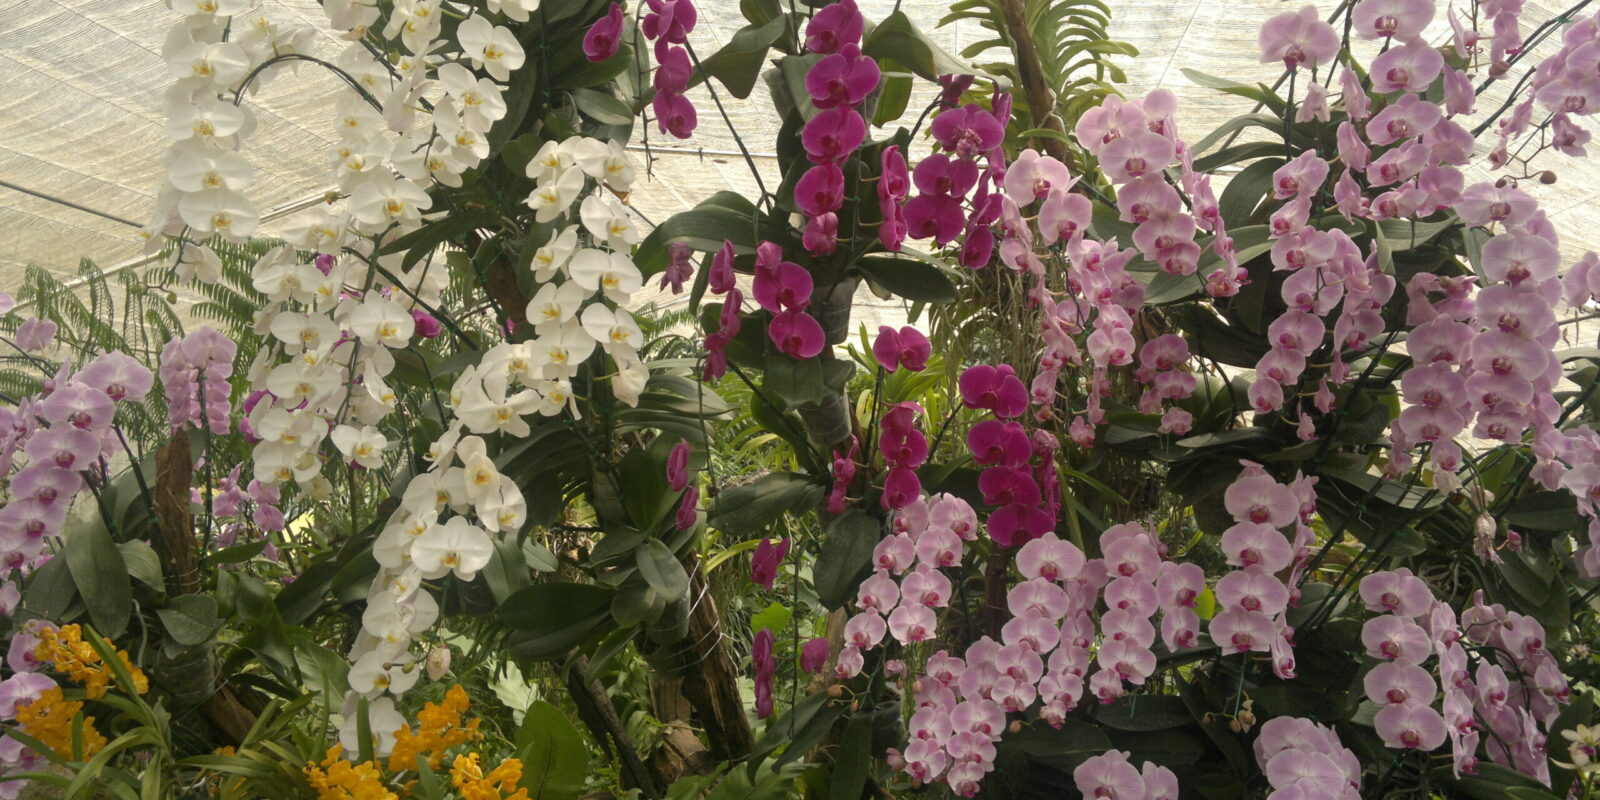 Queen sirikit botanic garden, Chiang Mai